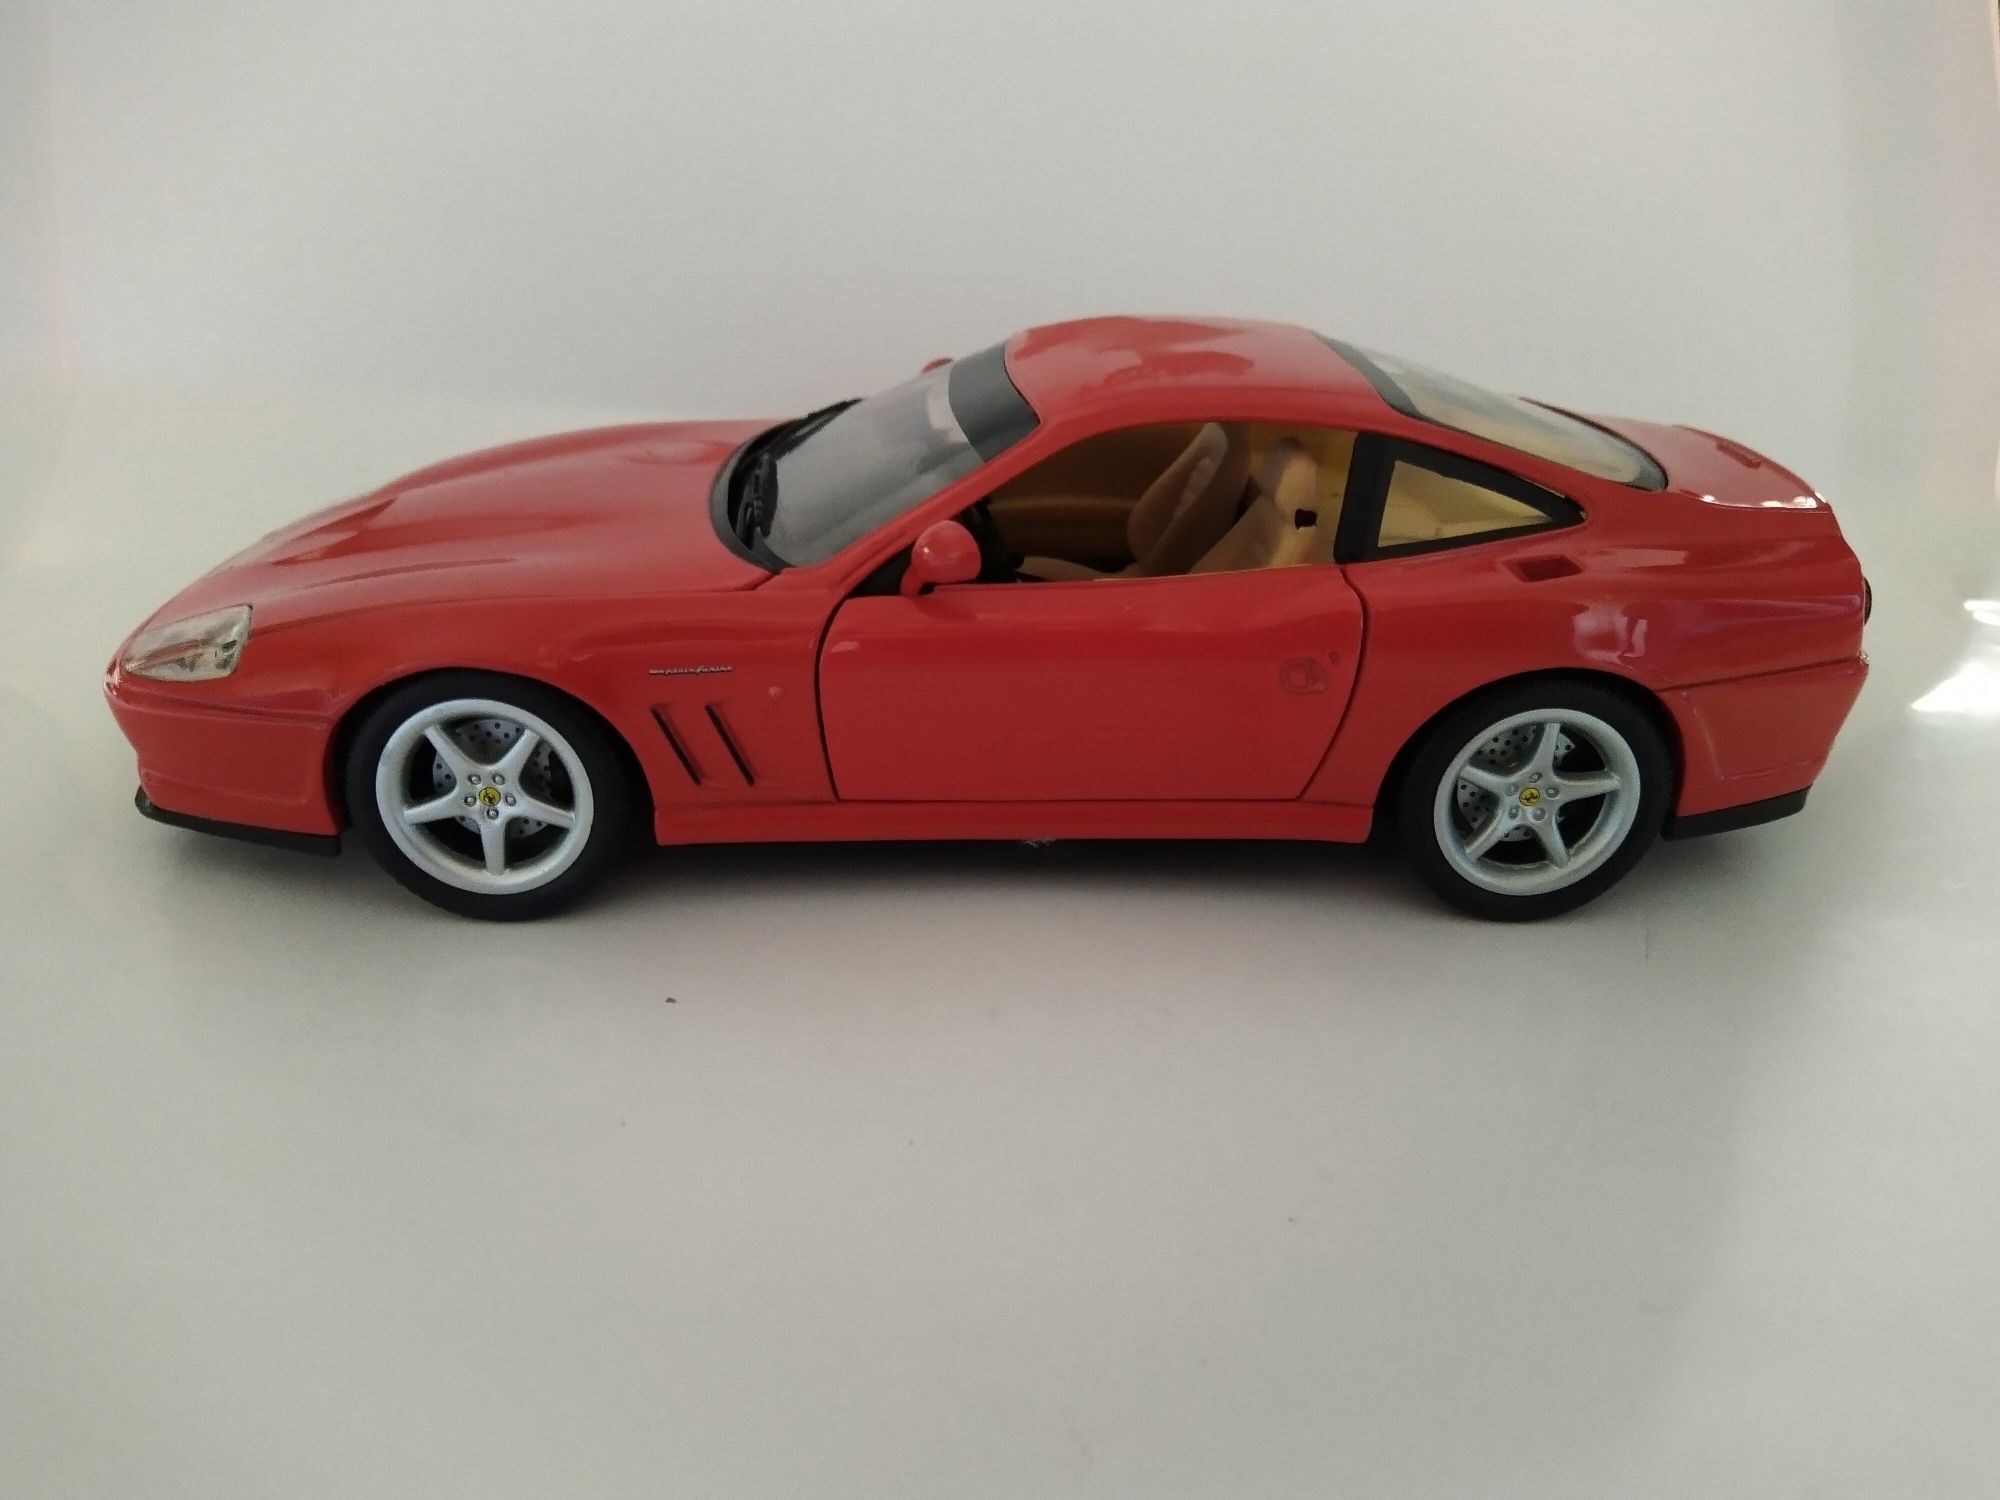 Ferrari 550 Maranello Hot wheels 1:18